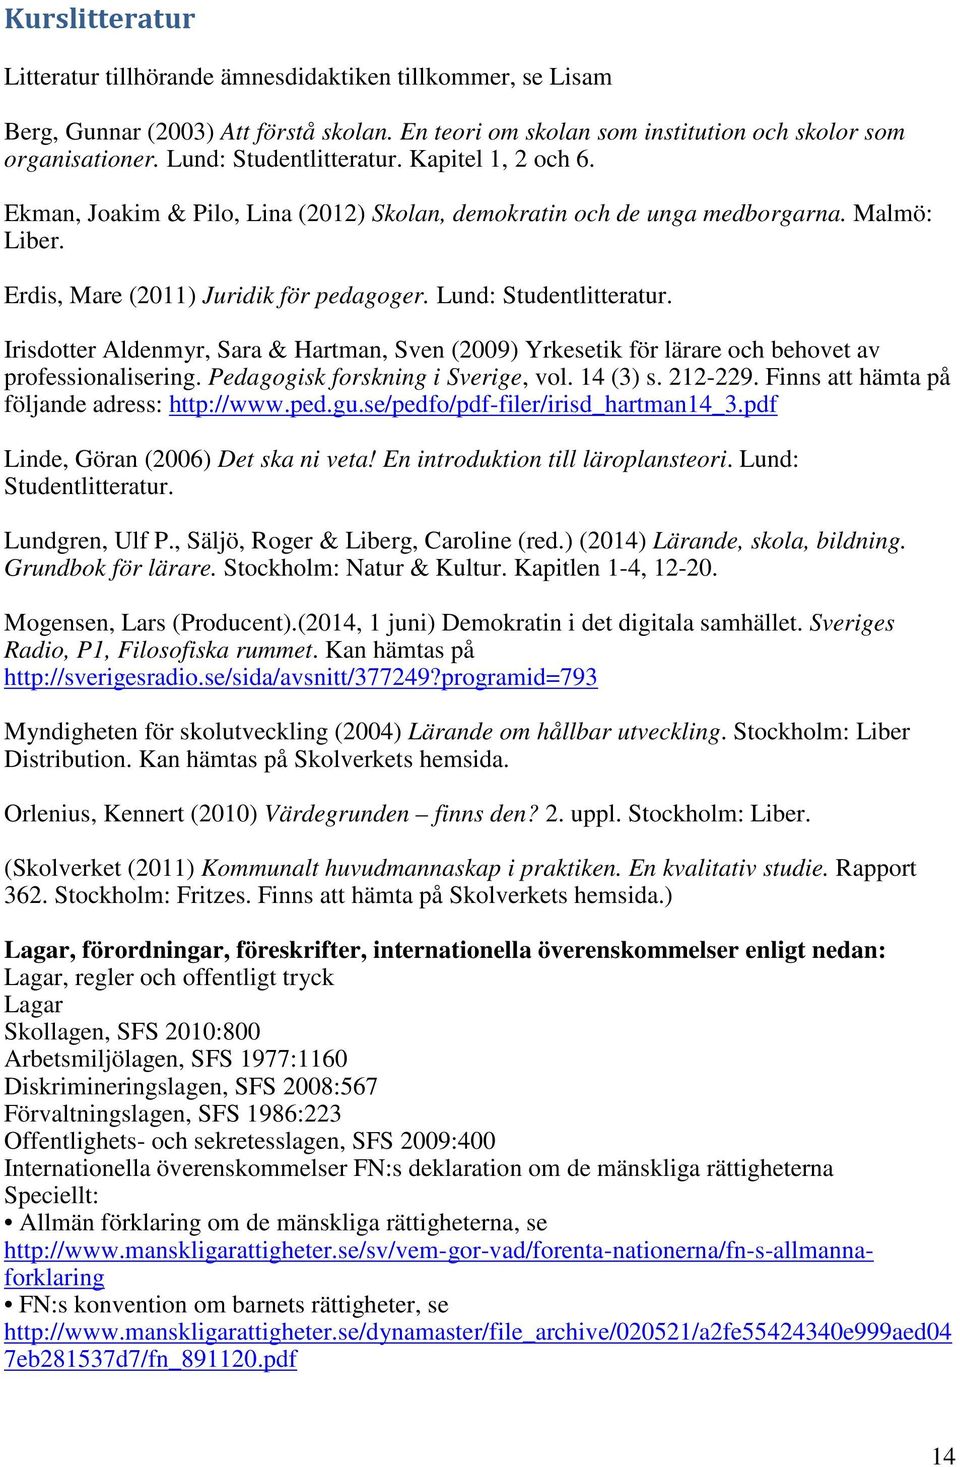 Lund: Studentlitteratur. Irisdotter Aldenmyr, Sara & Hartman, Sven (2009) Yrkesetik för lärare och behovet av professionalisering. Pedagogisk forskning i Sverige, vol. 14 (3) s. 212-229.